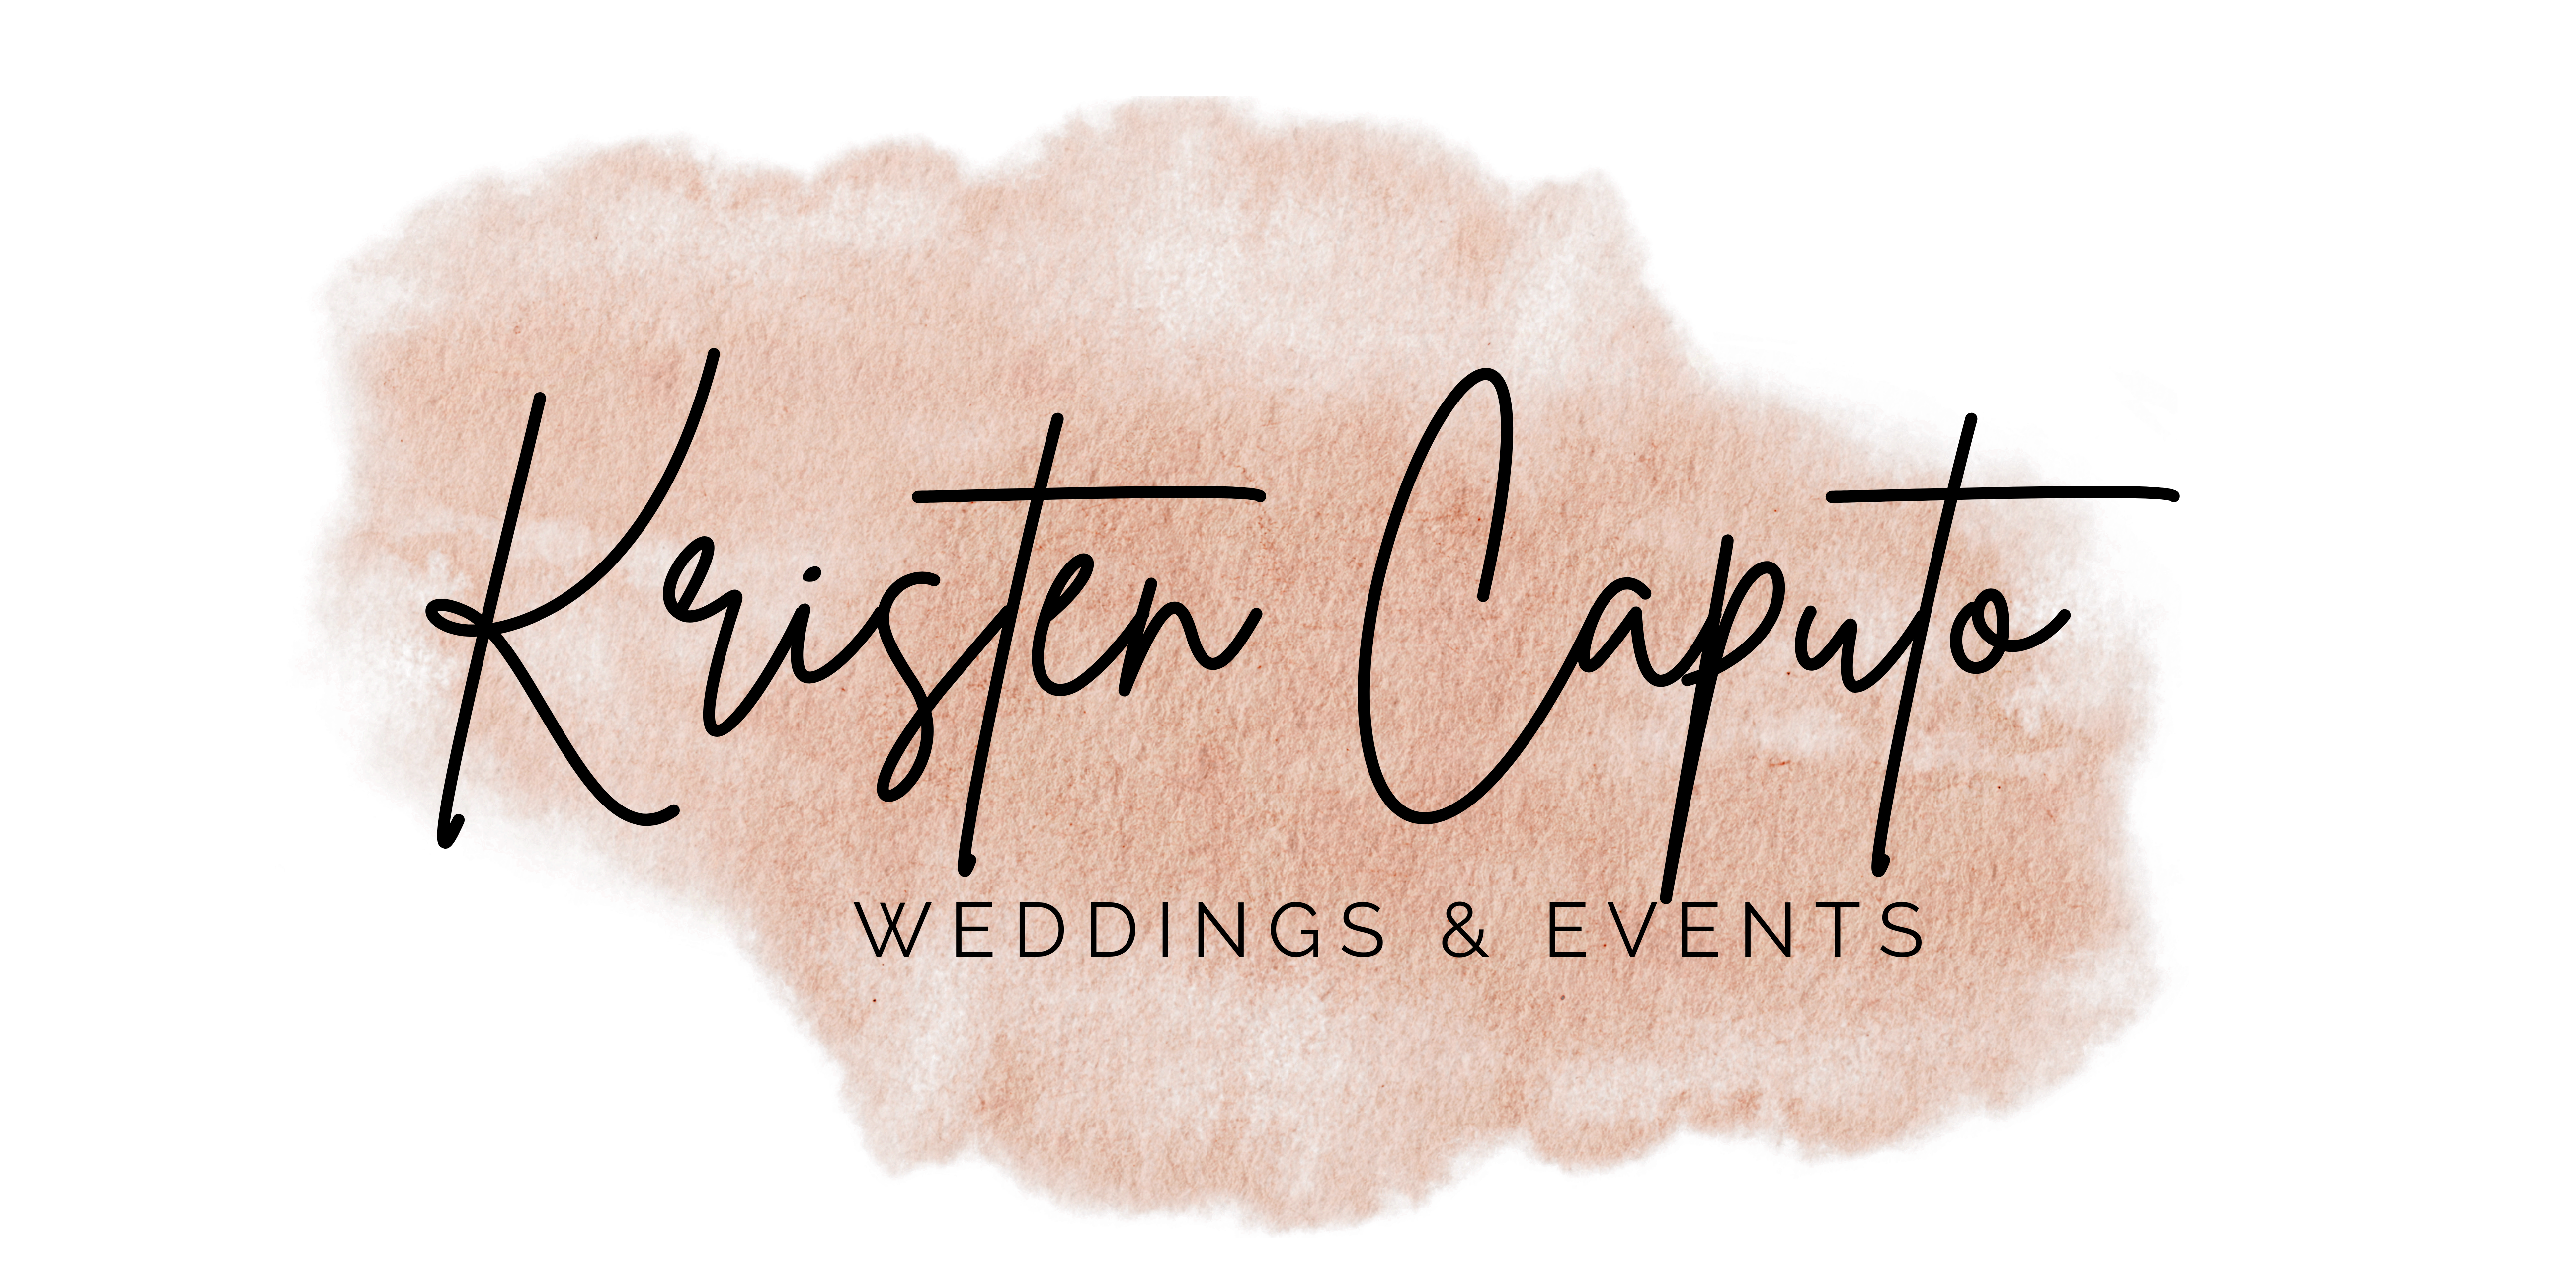 Kristen Caputo Weddings & Events